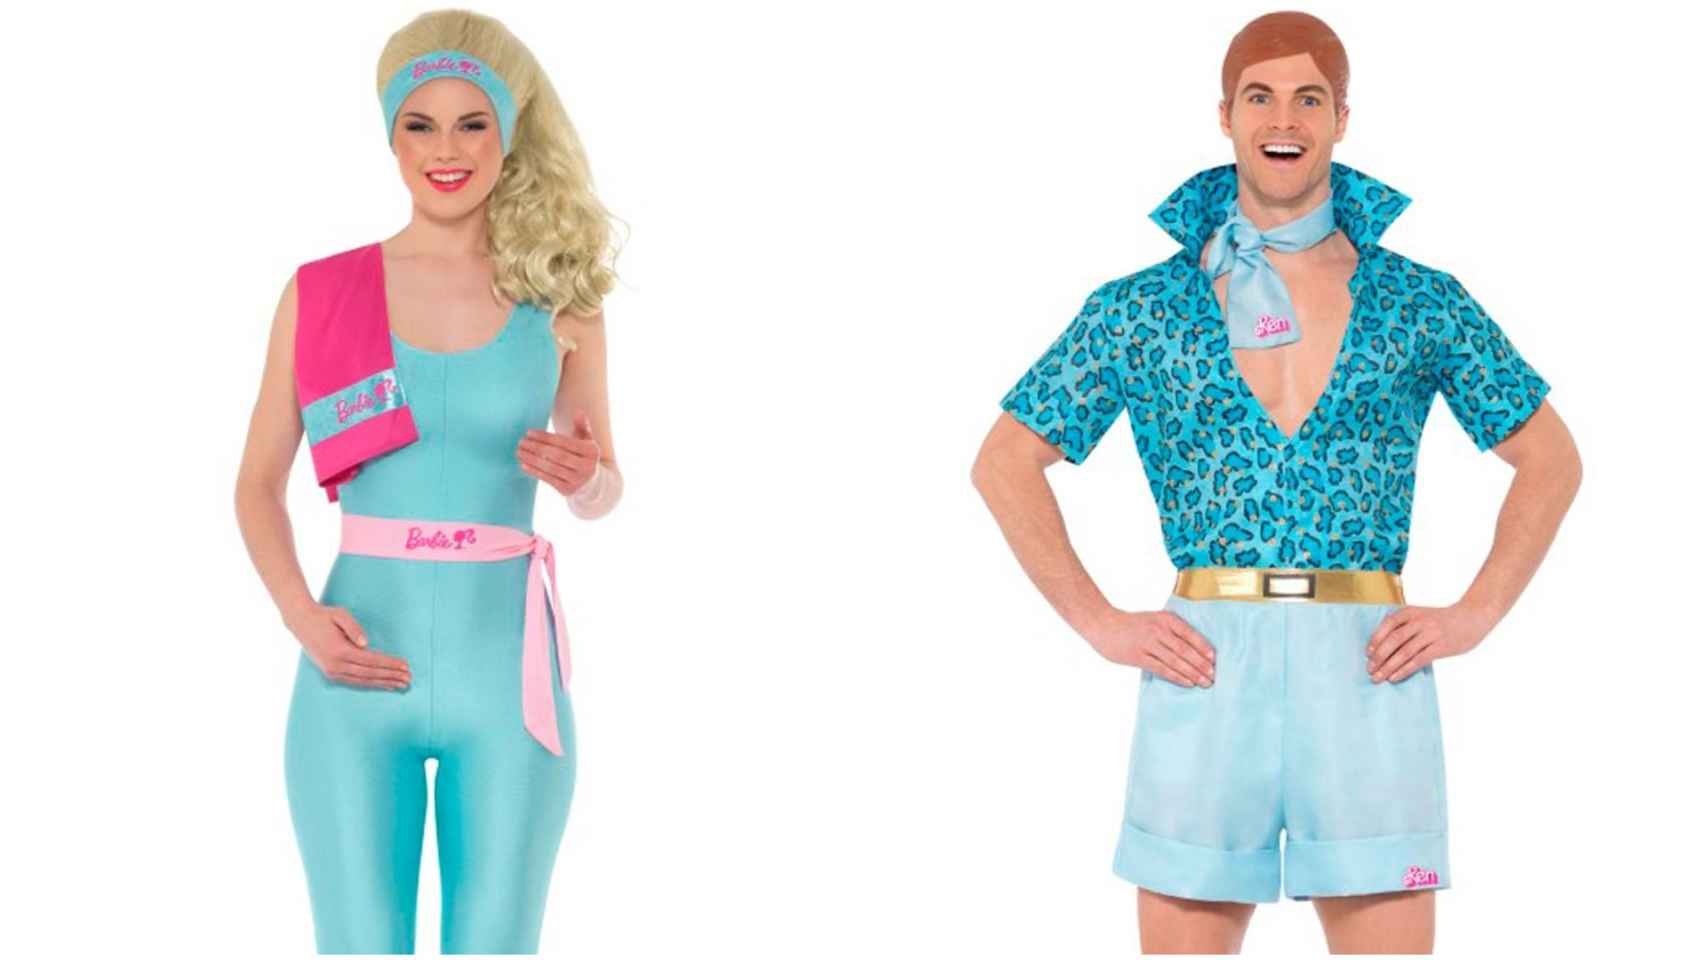 Los disfraces de Barbie y Ken.